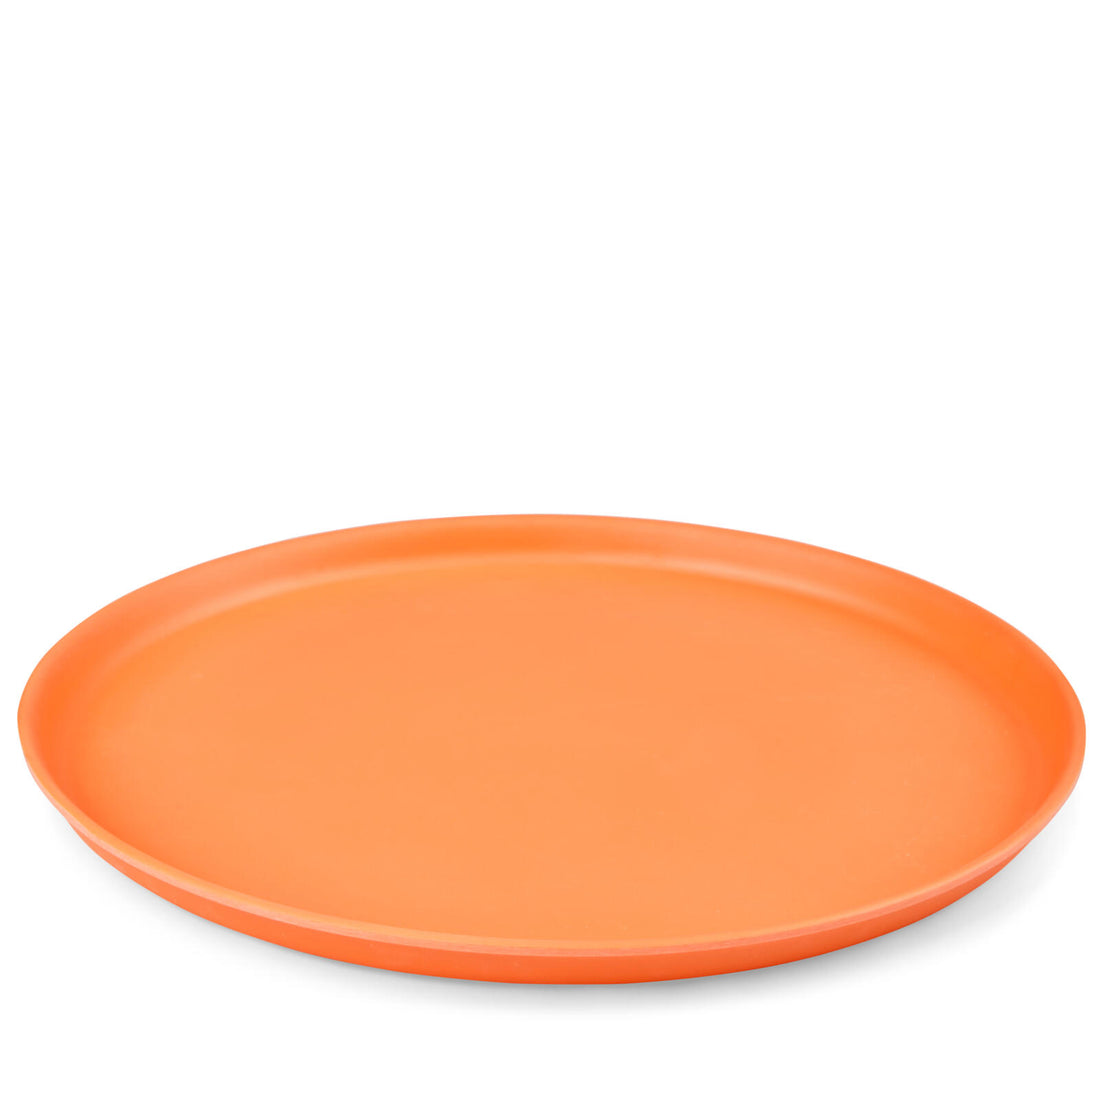 REFRESH Orange round tray H 2.3 cm - Ø 32 cm